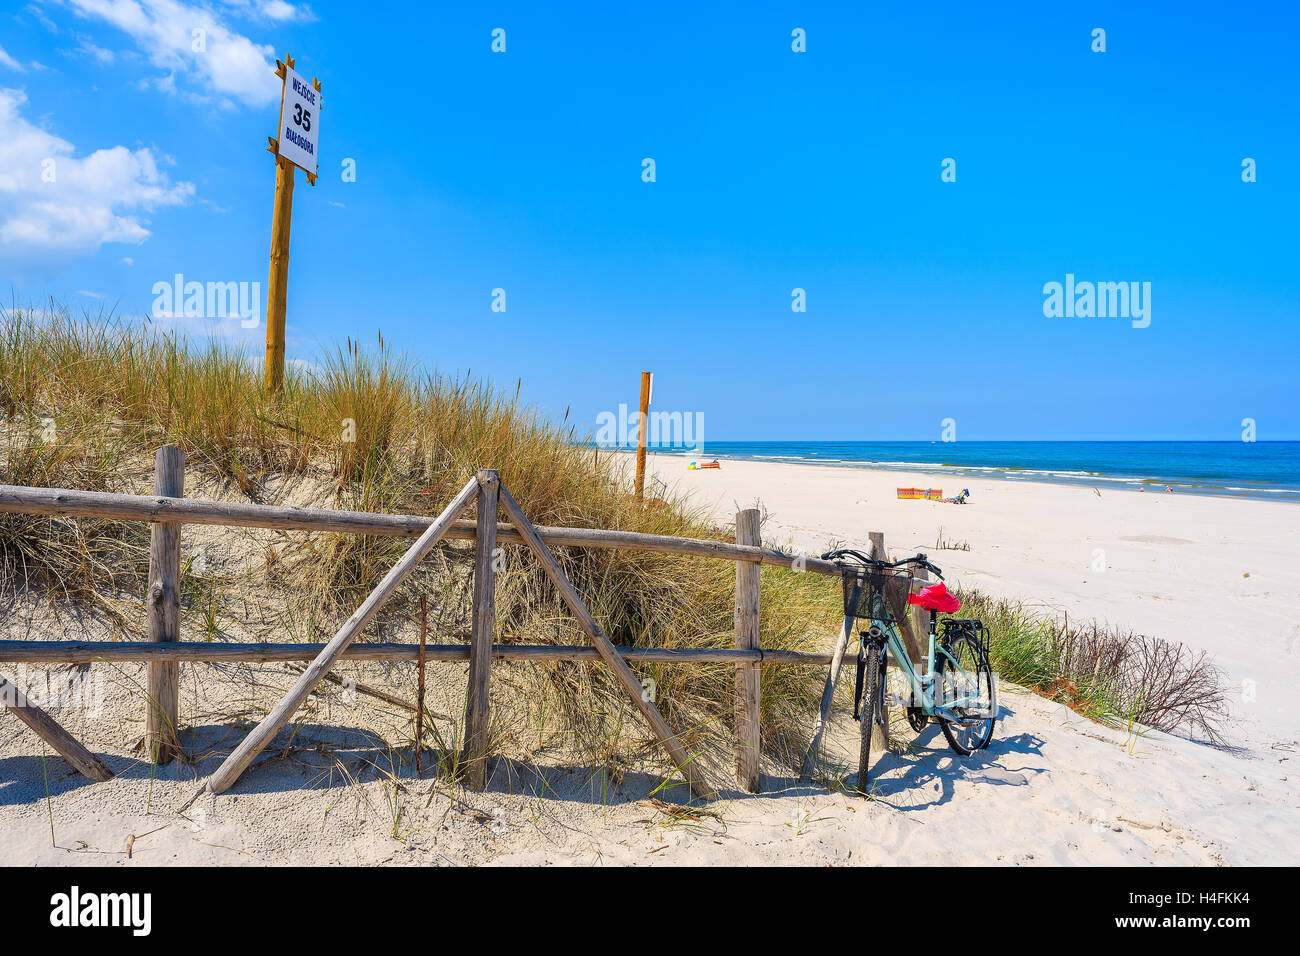 Moto parcheggiata all'entrata idilliaca spiaggia sabbiosa in Bialogora villaggio costiero, Mar Baltico, Polonia. Segno sul palo di legno membri 'Ent Foto Stock